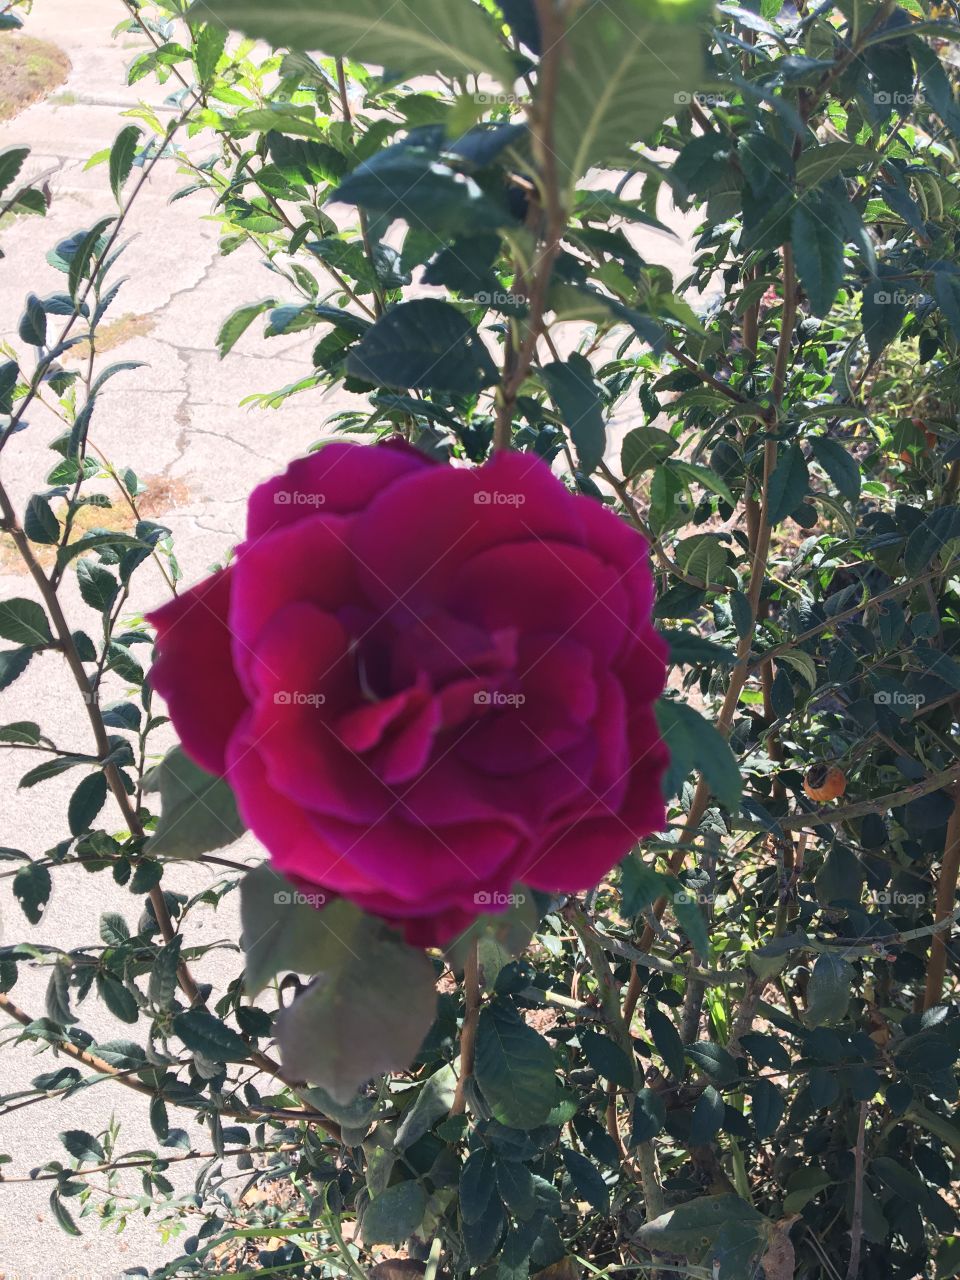 Garden roses Burgundy